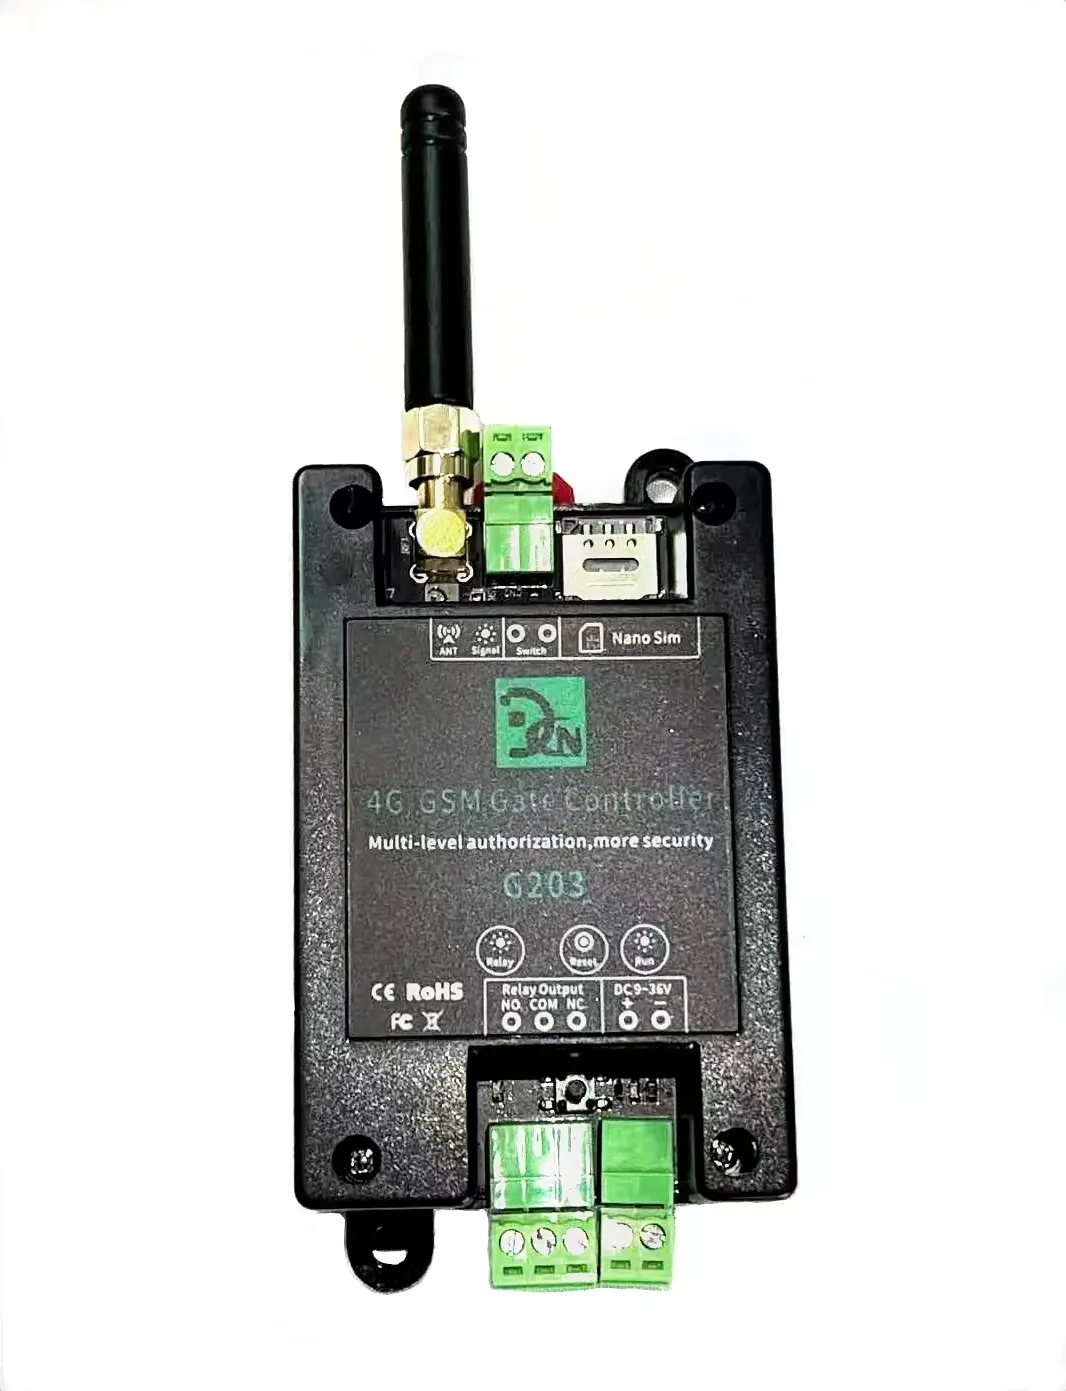 Chisung Suporte 999 Usadores Novo Modelo G203 4G GSM Relé Cartão SIM Interruptor de Relé GSM chamada grátis Controle por Aplicativo Callny